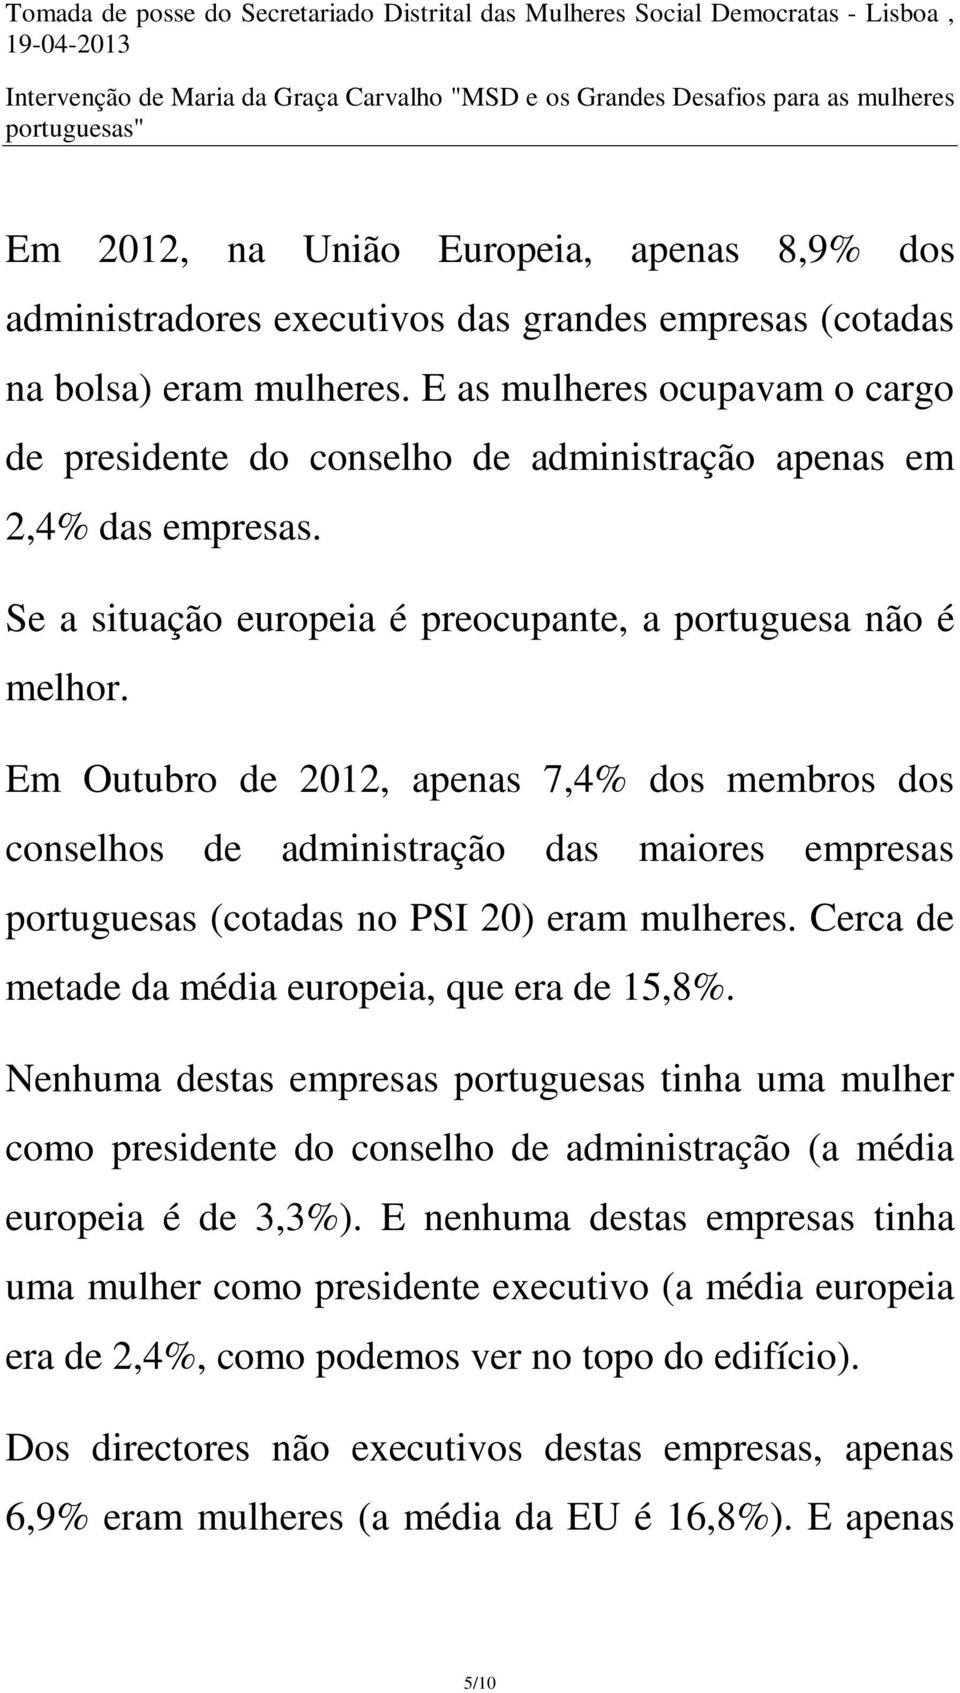 Em Outubro de 2012, apenas 7,4% dos membros dos conselhos de administração das maiores empresas portuguesas (cotadas no PSI 20) eram mulheres. Cerca de metade da média europeia, que era de 15,8%.